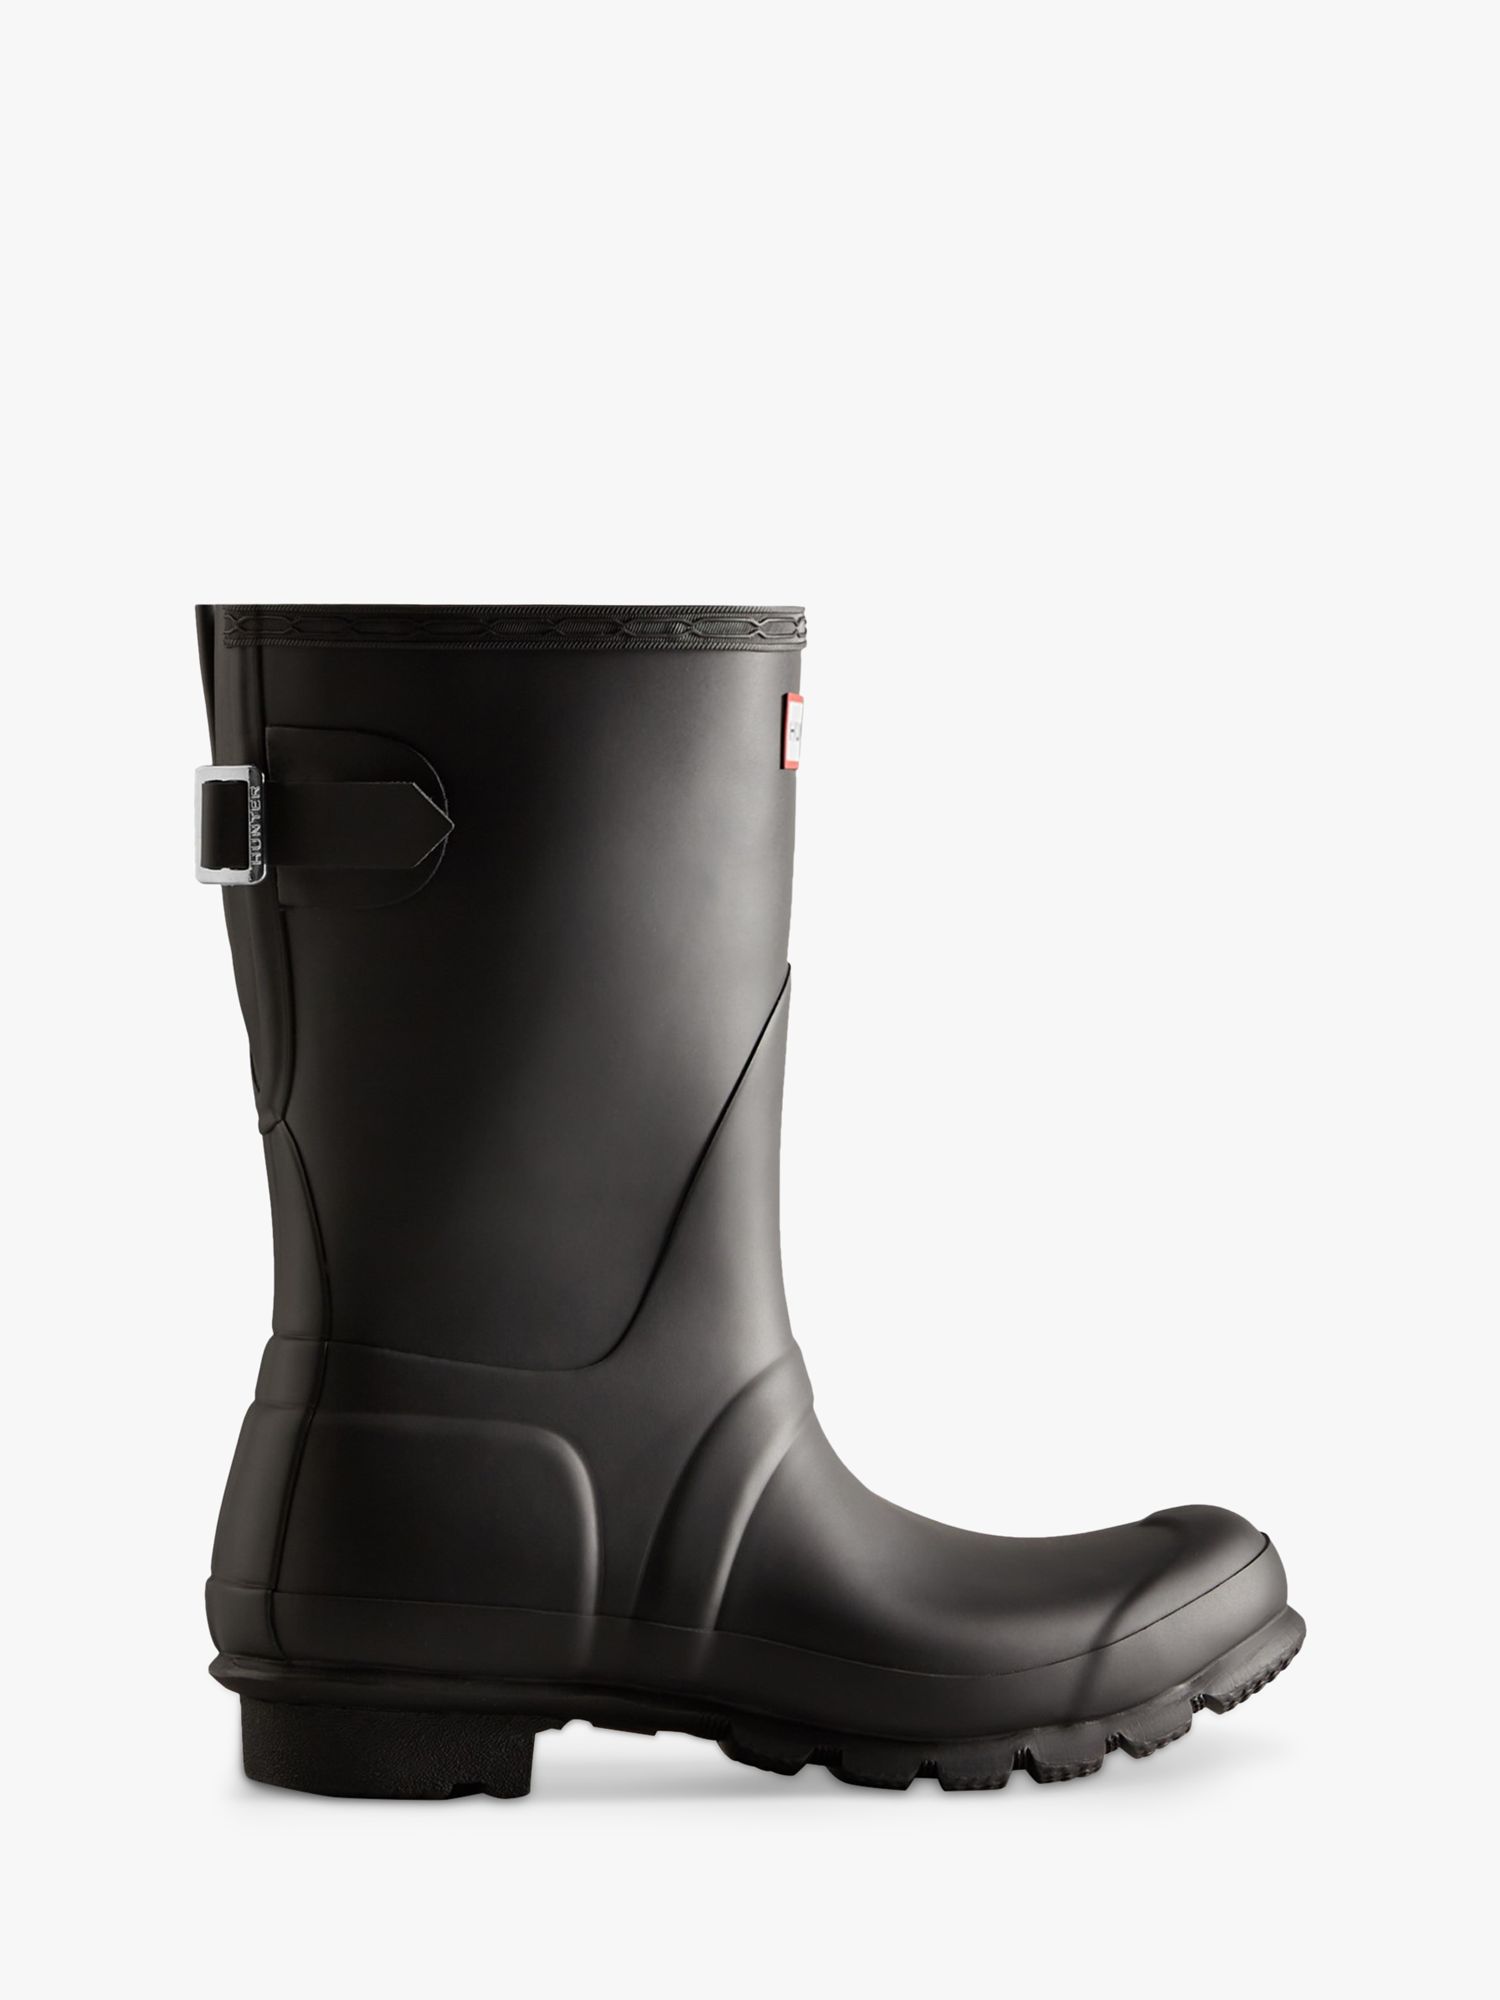 Hunter Short Back Adjustable Wellington Boots, Black, 3